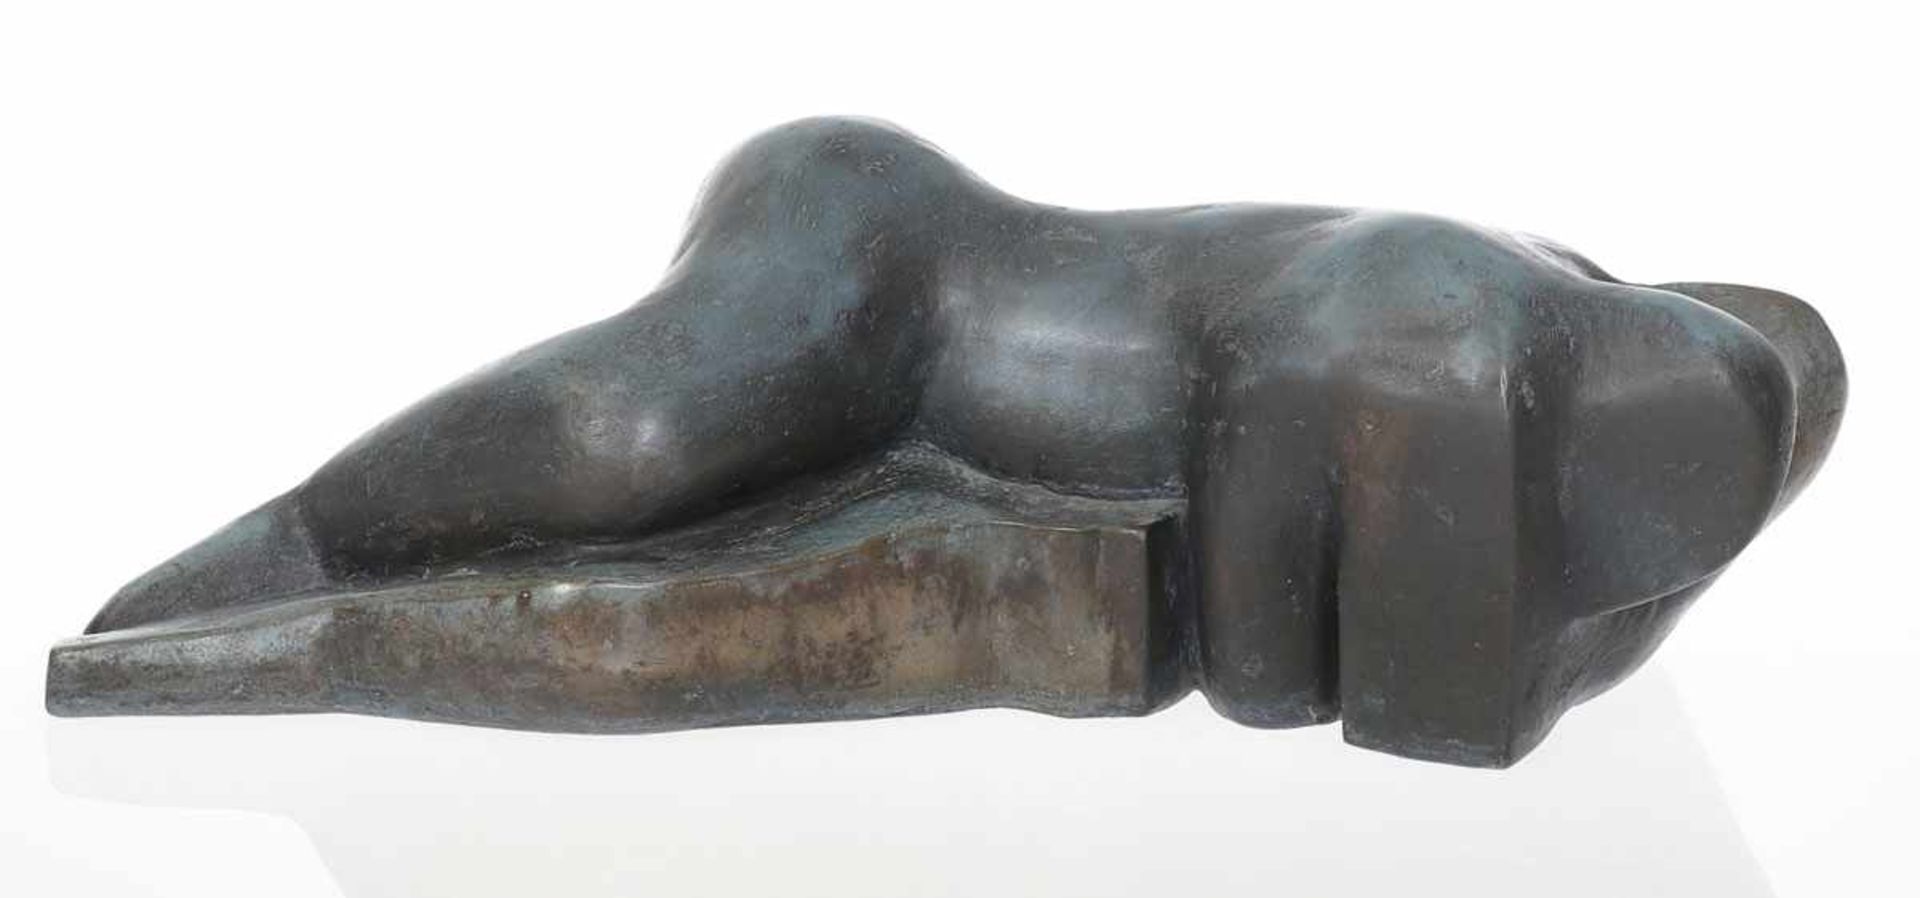 Gerlind Brunhild Friederich1939 Vilsbiburg - 2019 Hannover - "Liebespaar" - Bronze. Olivgrün und